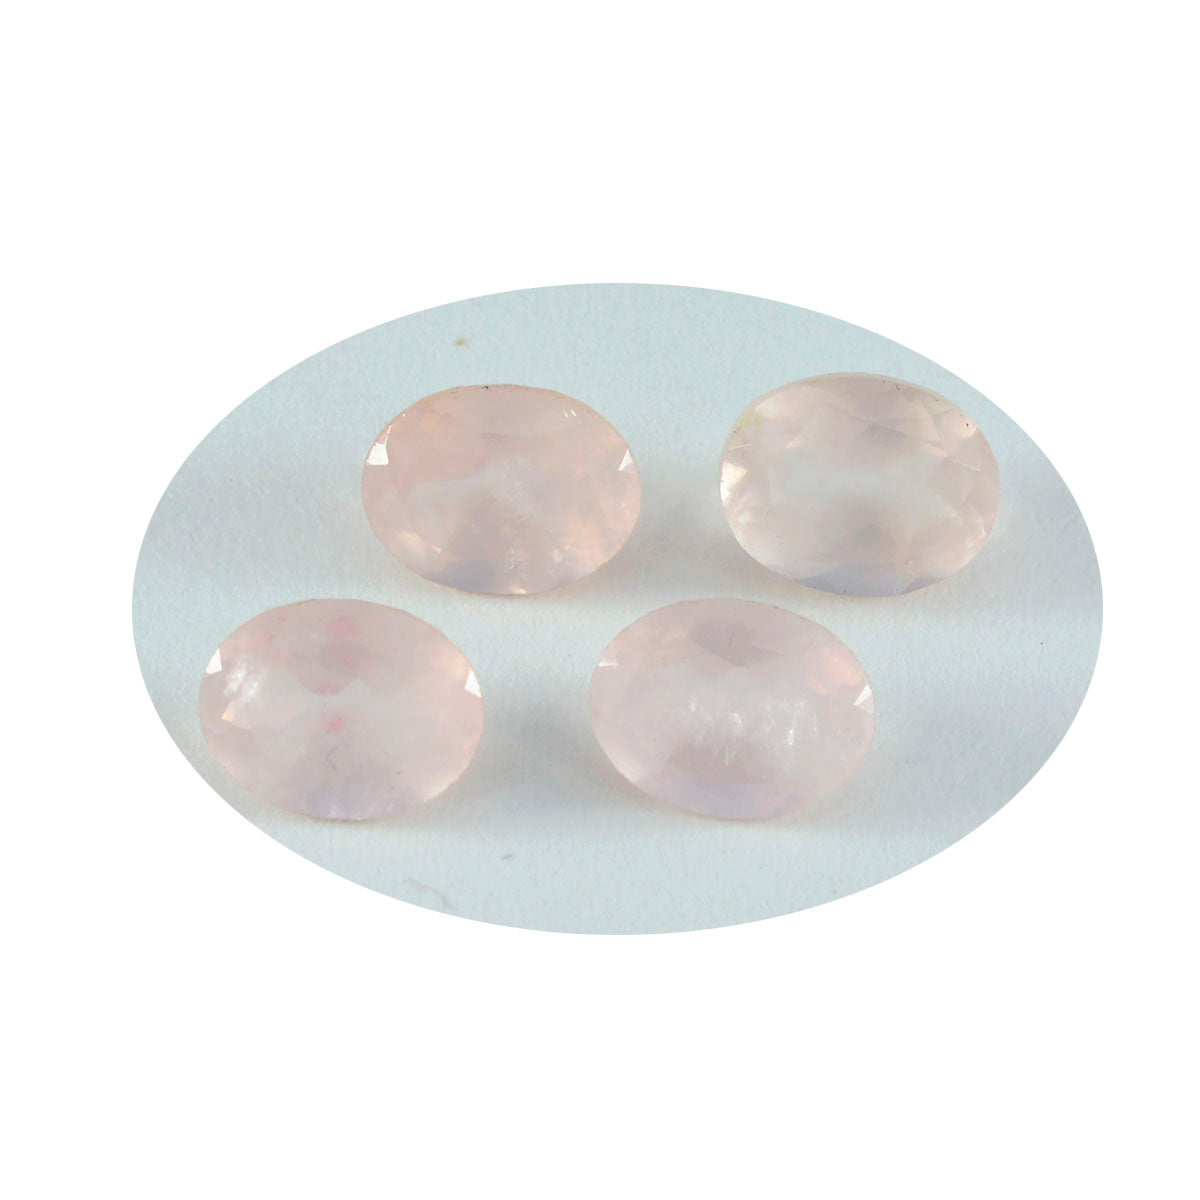 riyogems 1шт розовый кварц ограненный 10x14 мм овальной формы фантастическое качество россыпной камень